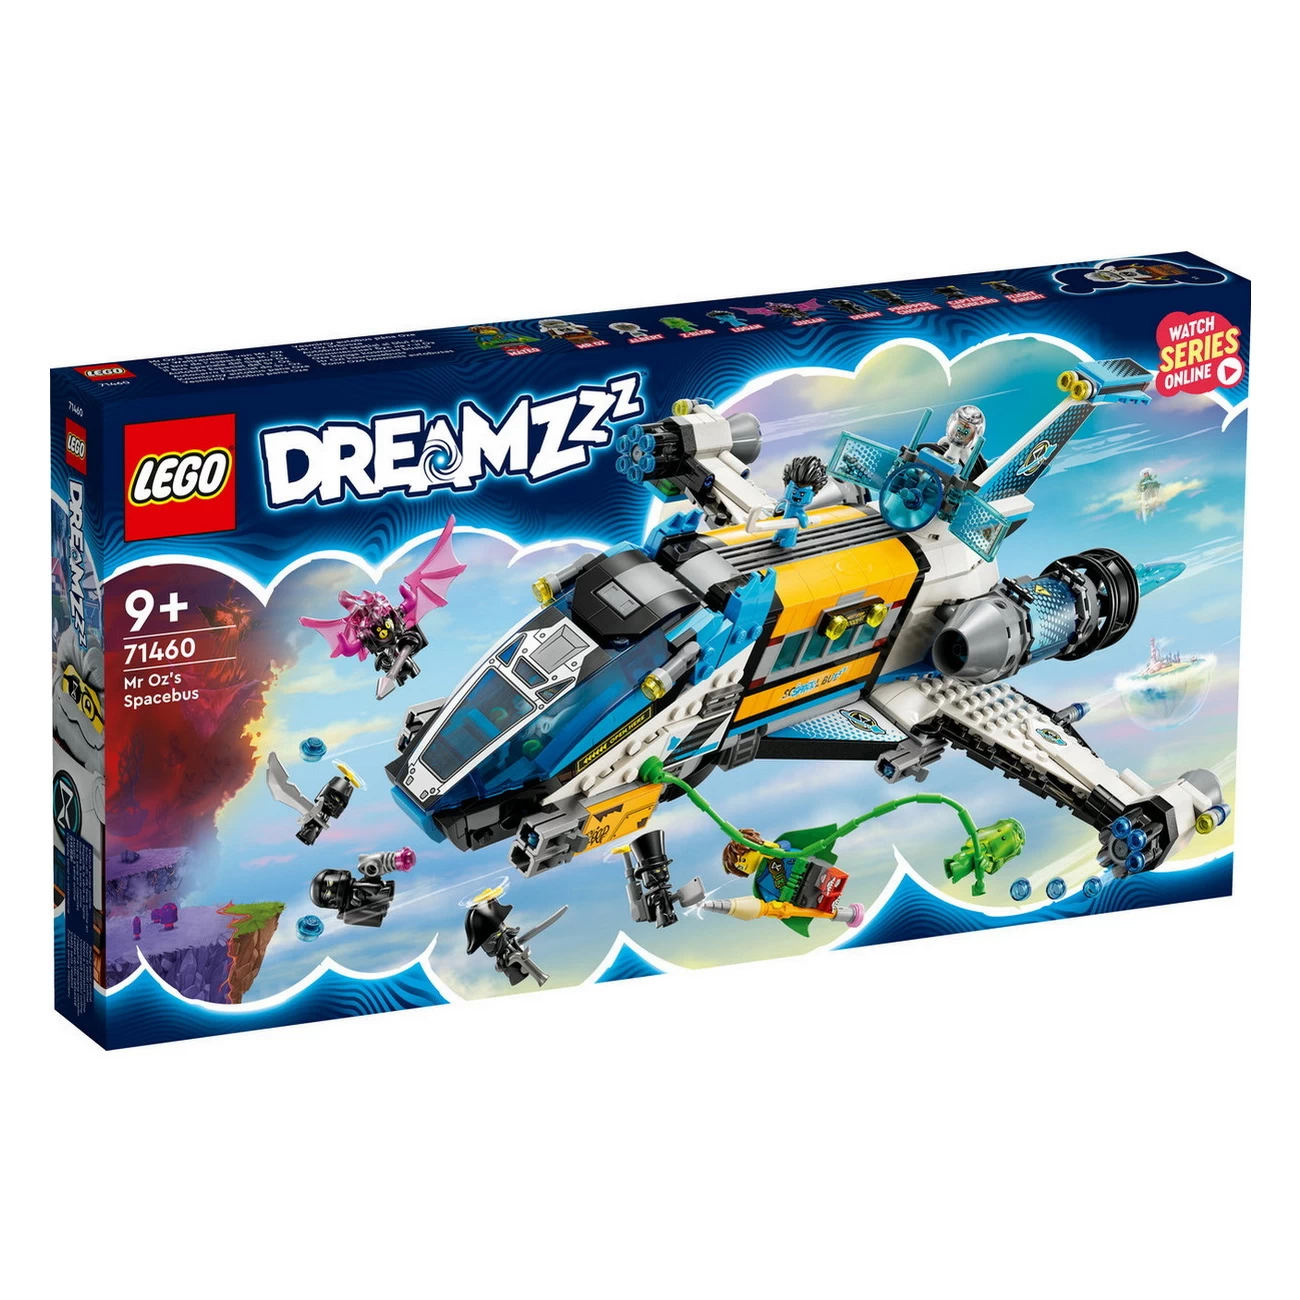 LEGO DREAMZzz - Der Weltraumbus von Mr Oz - 71460